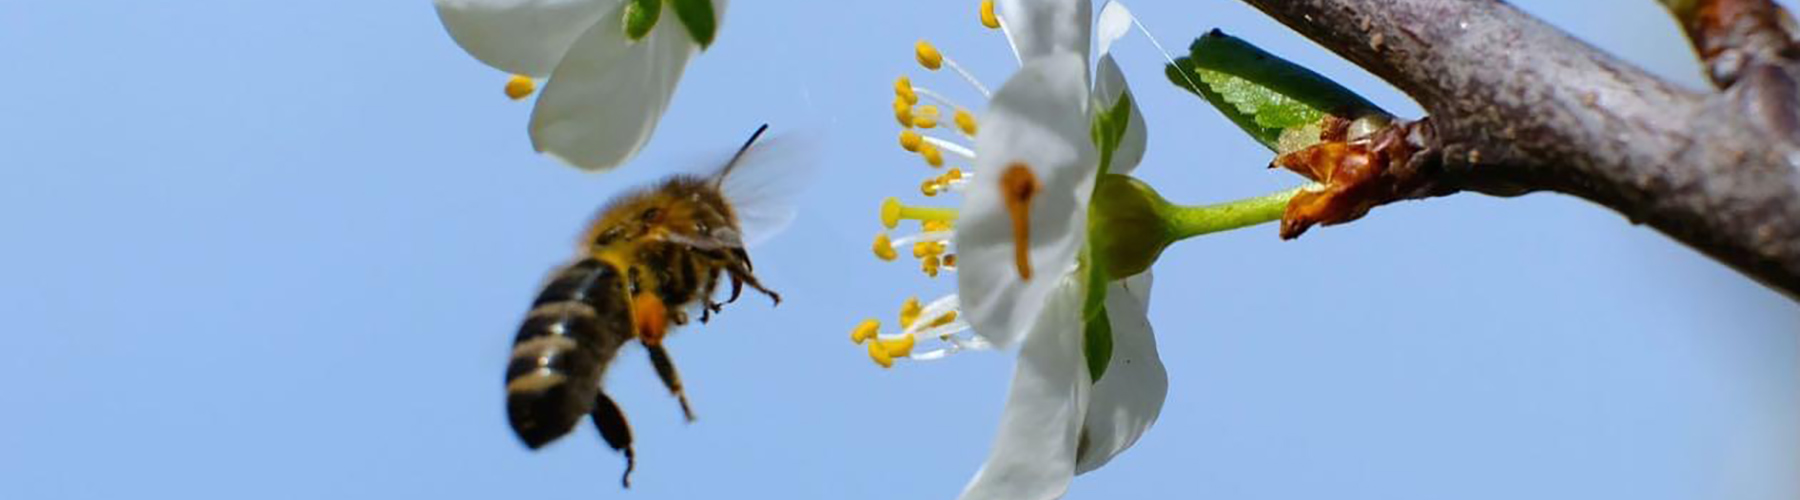 Honey bee flying towards a white flower